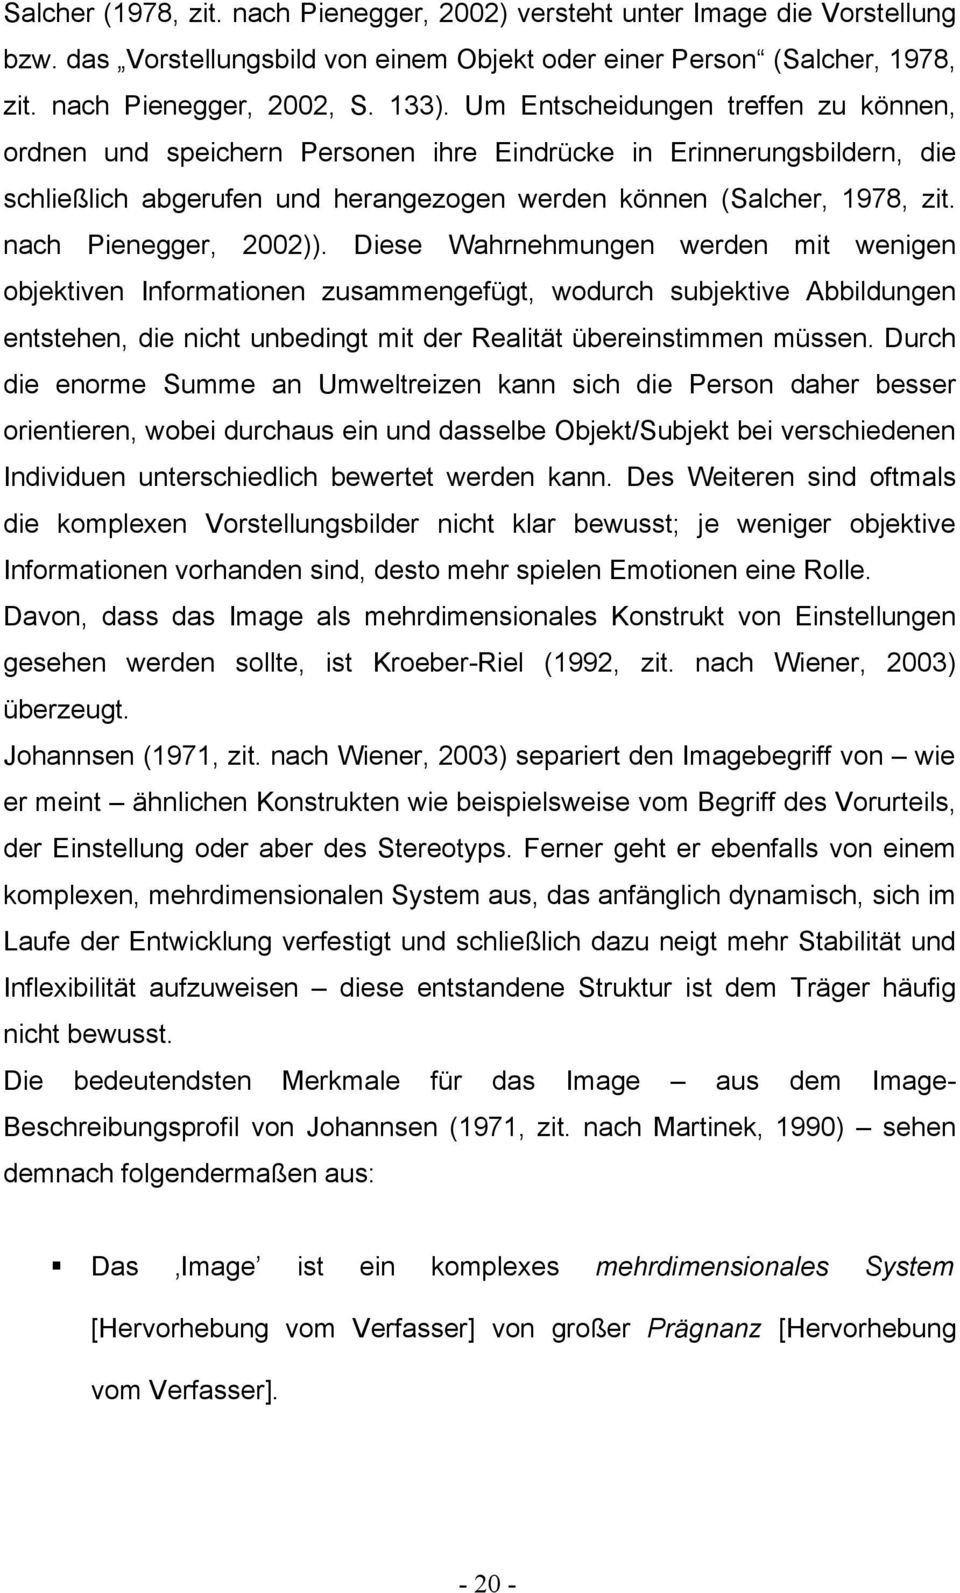 nach Pienegger, 2002)).